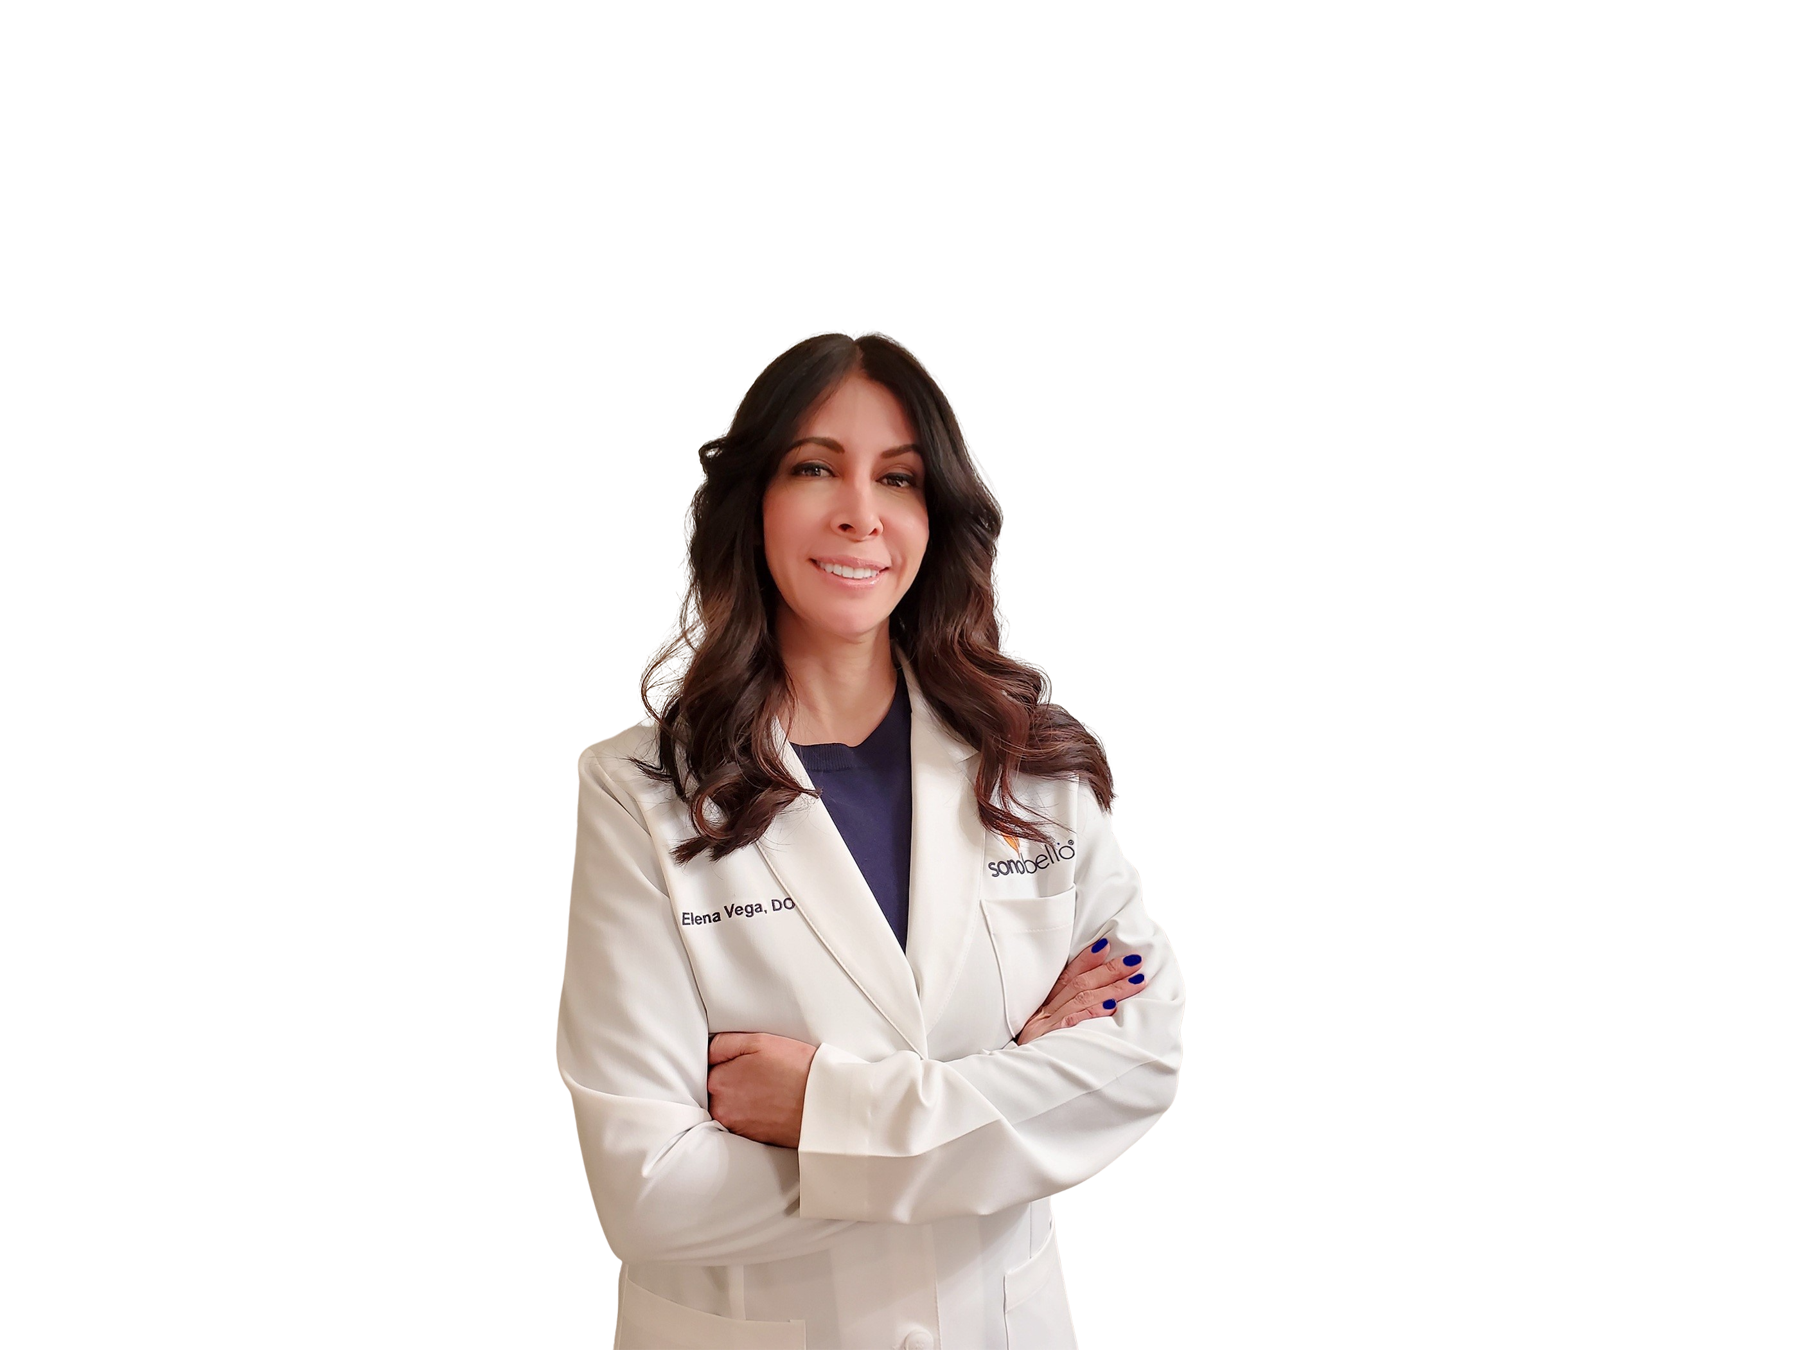 Sono Bello Doctor Elena Vega, D.O.